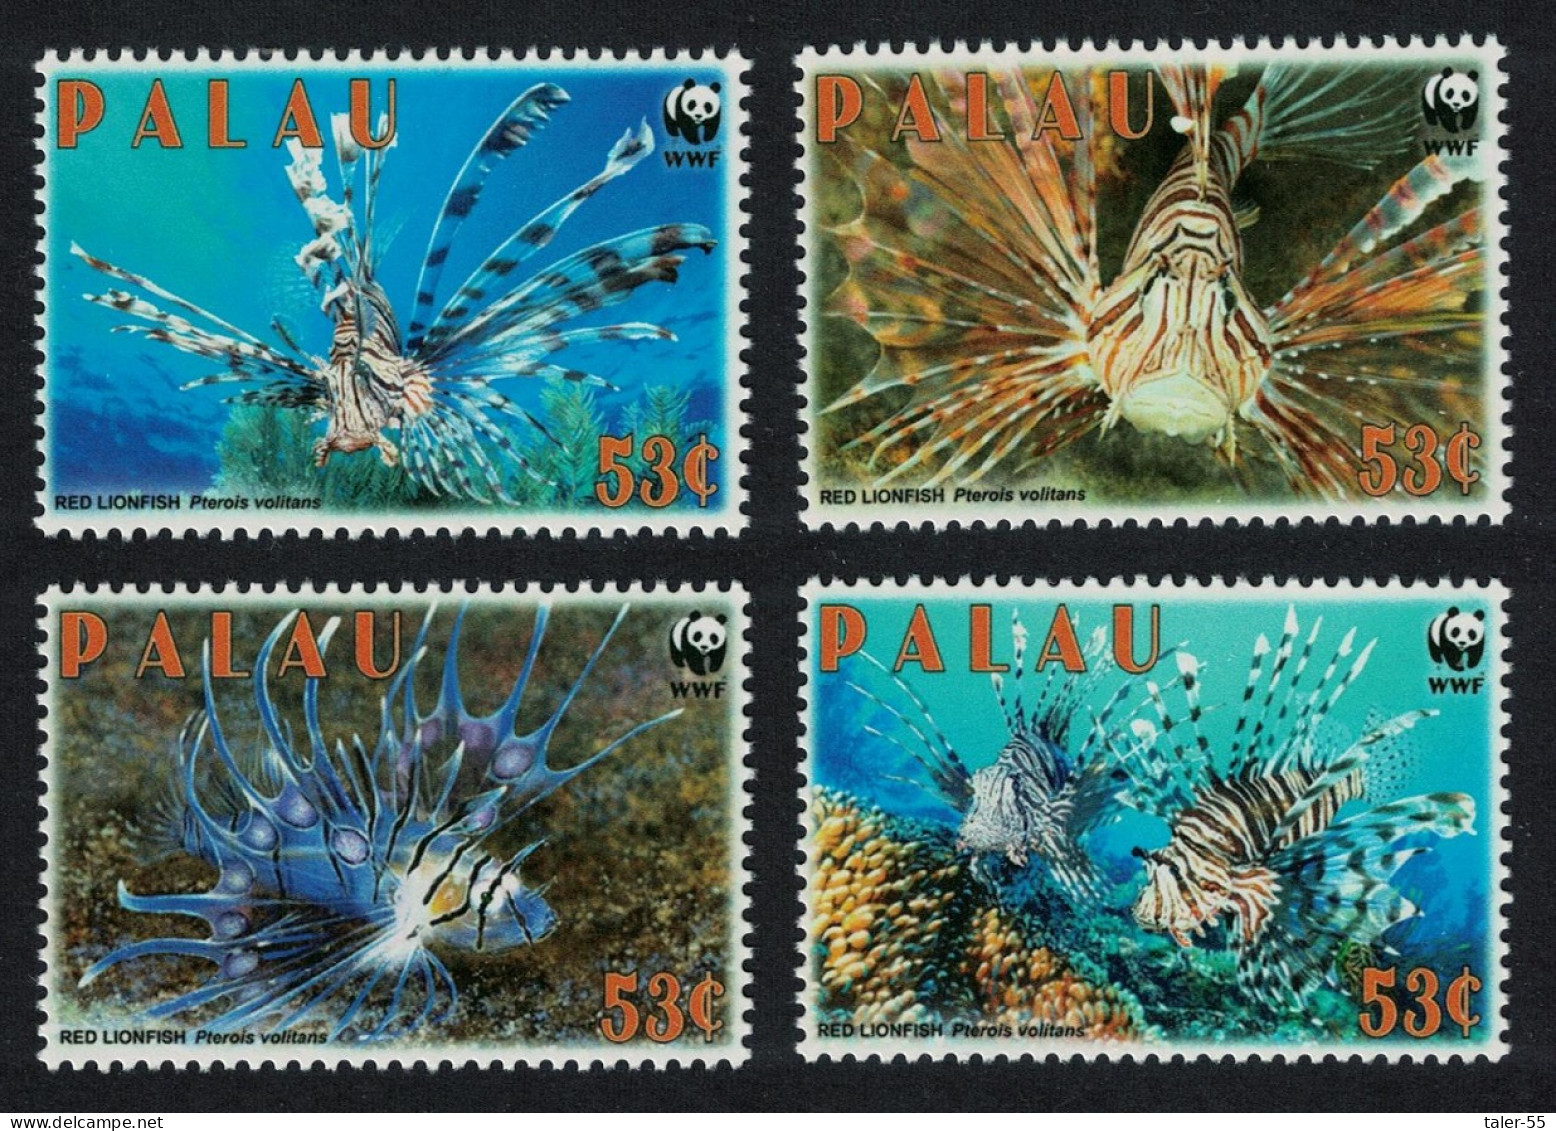 Palau WWF Red Lionfish 'Pterois Voltans' 4v 2009 MNH SG#2379-2382 MI#2902-2905 Sc#992 - Palau